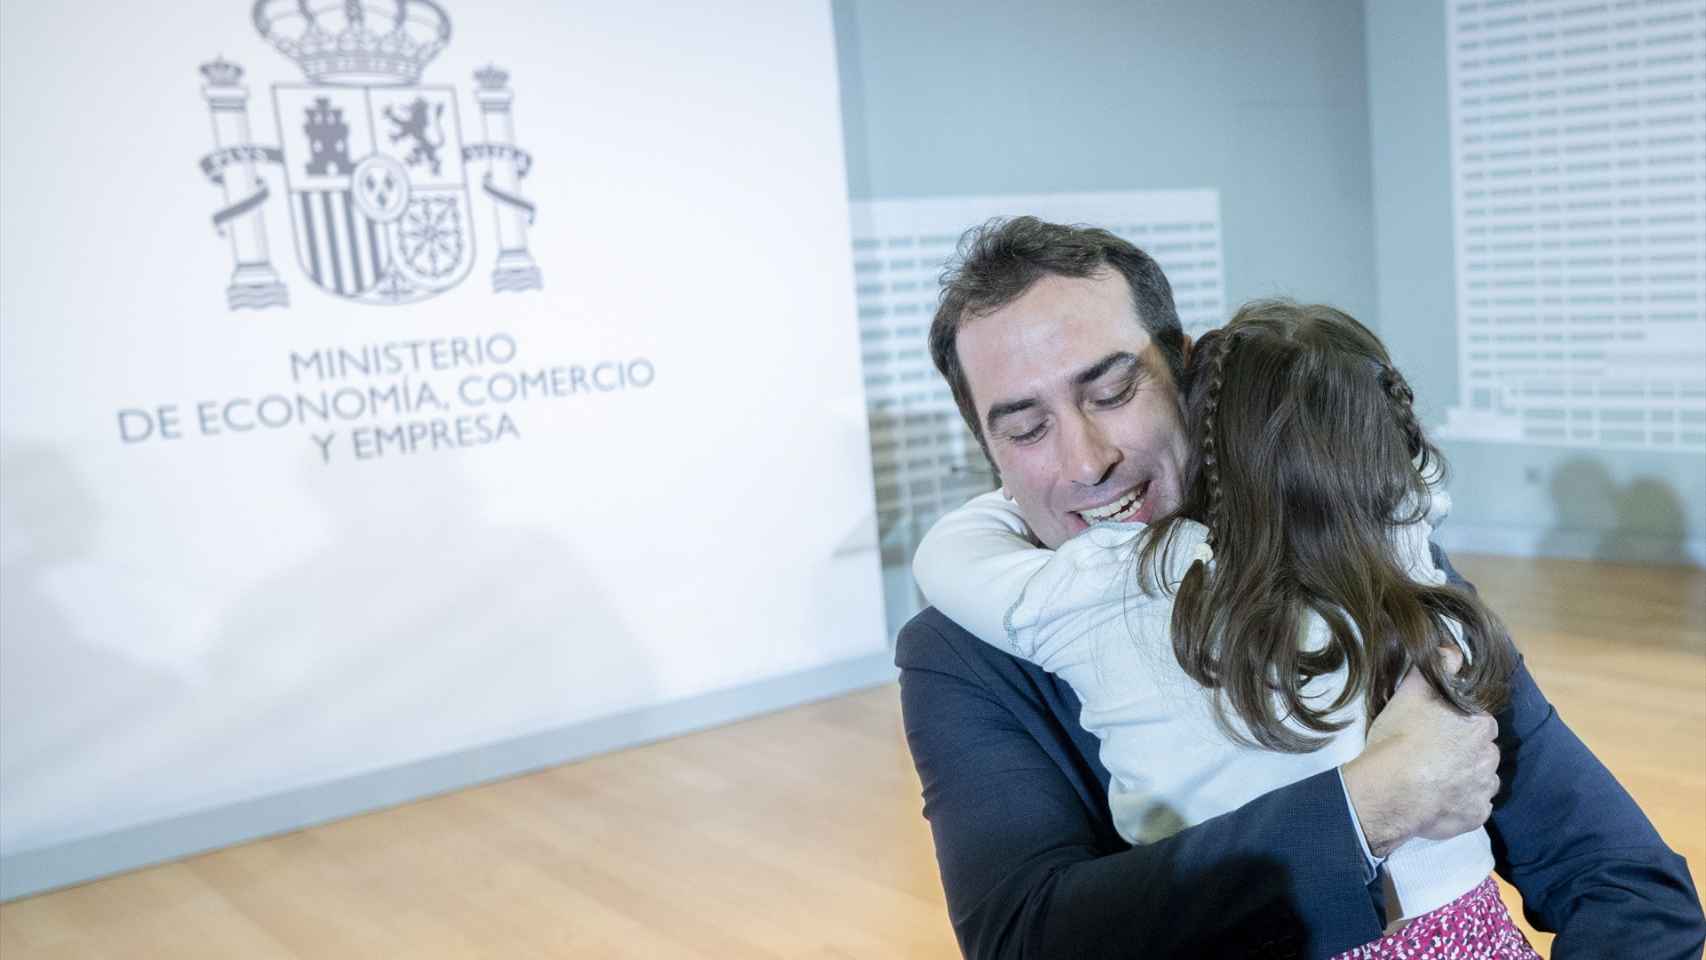 El nuevo ministro de Economía, Comercio y Empresa, Carlos Cuerpo, abraza a su hija durante el acto de traspaso de la cartera de Economía, Comercio y Empresa.